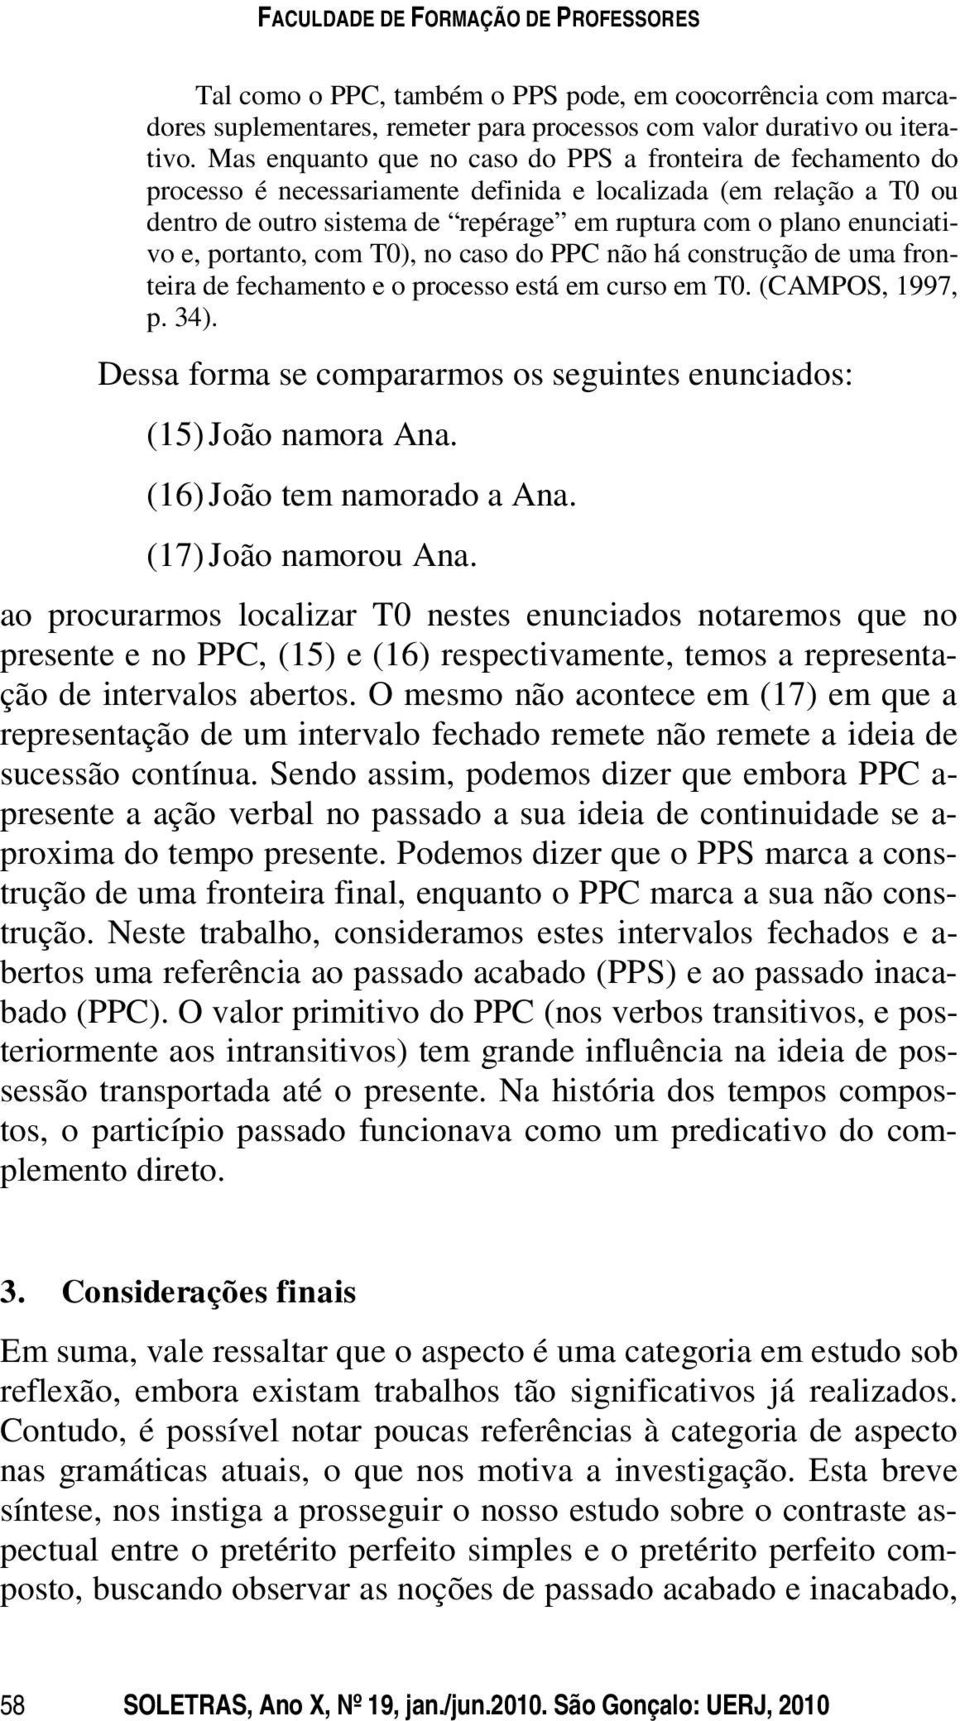 enunciativo e, portanto, com T0), no caso do PPC não há construção de uma fronteira de fechamento e o processo está em curso em T0. (CAMPOS, 1997, p. 34).